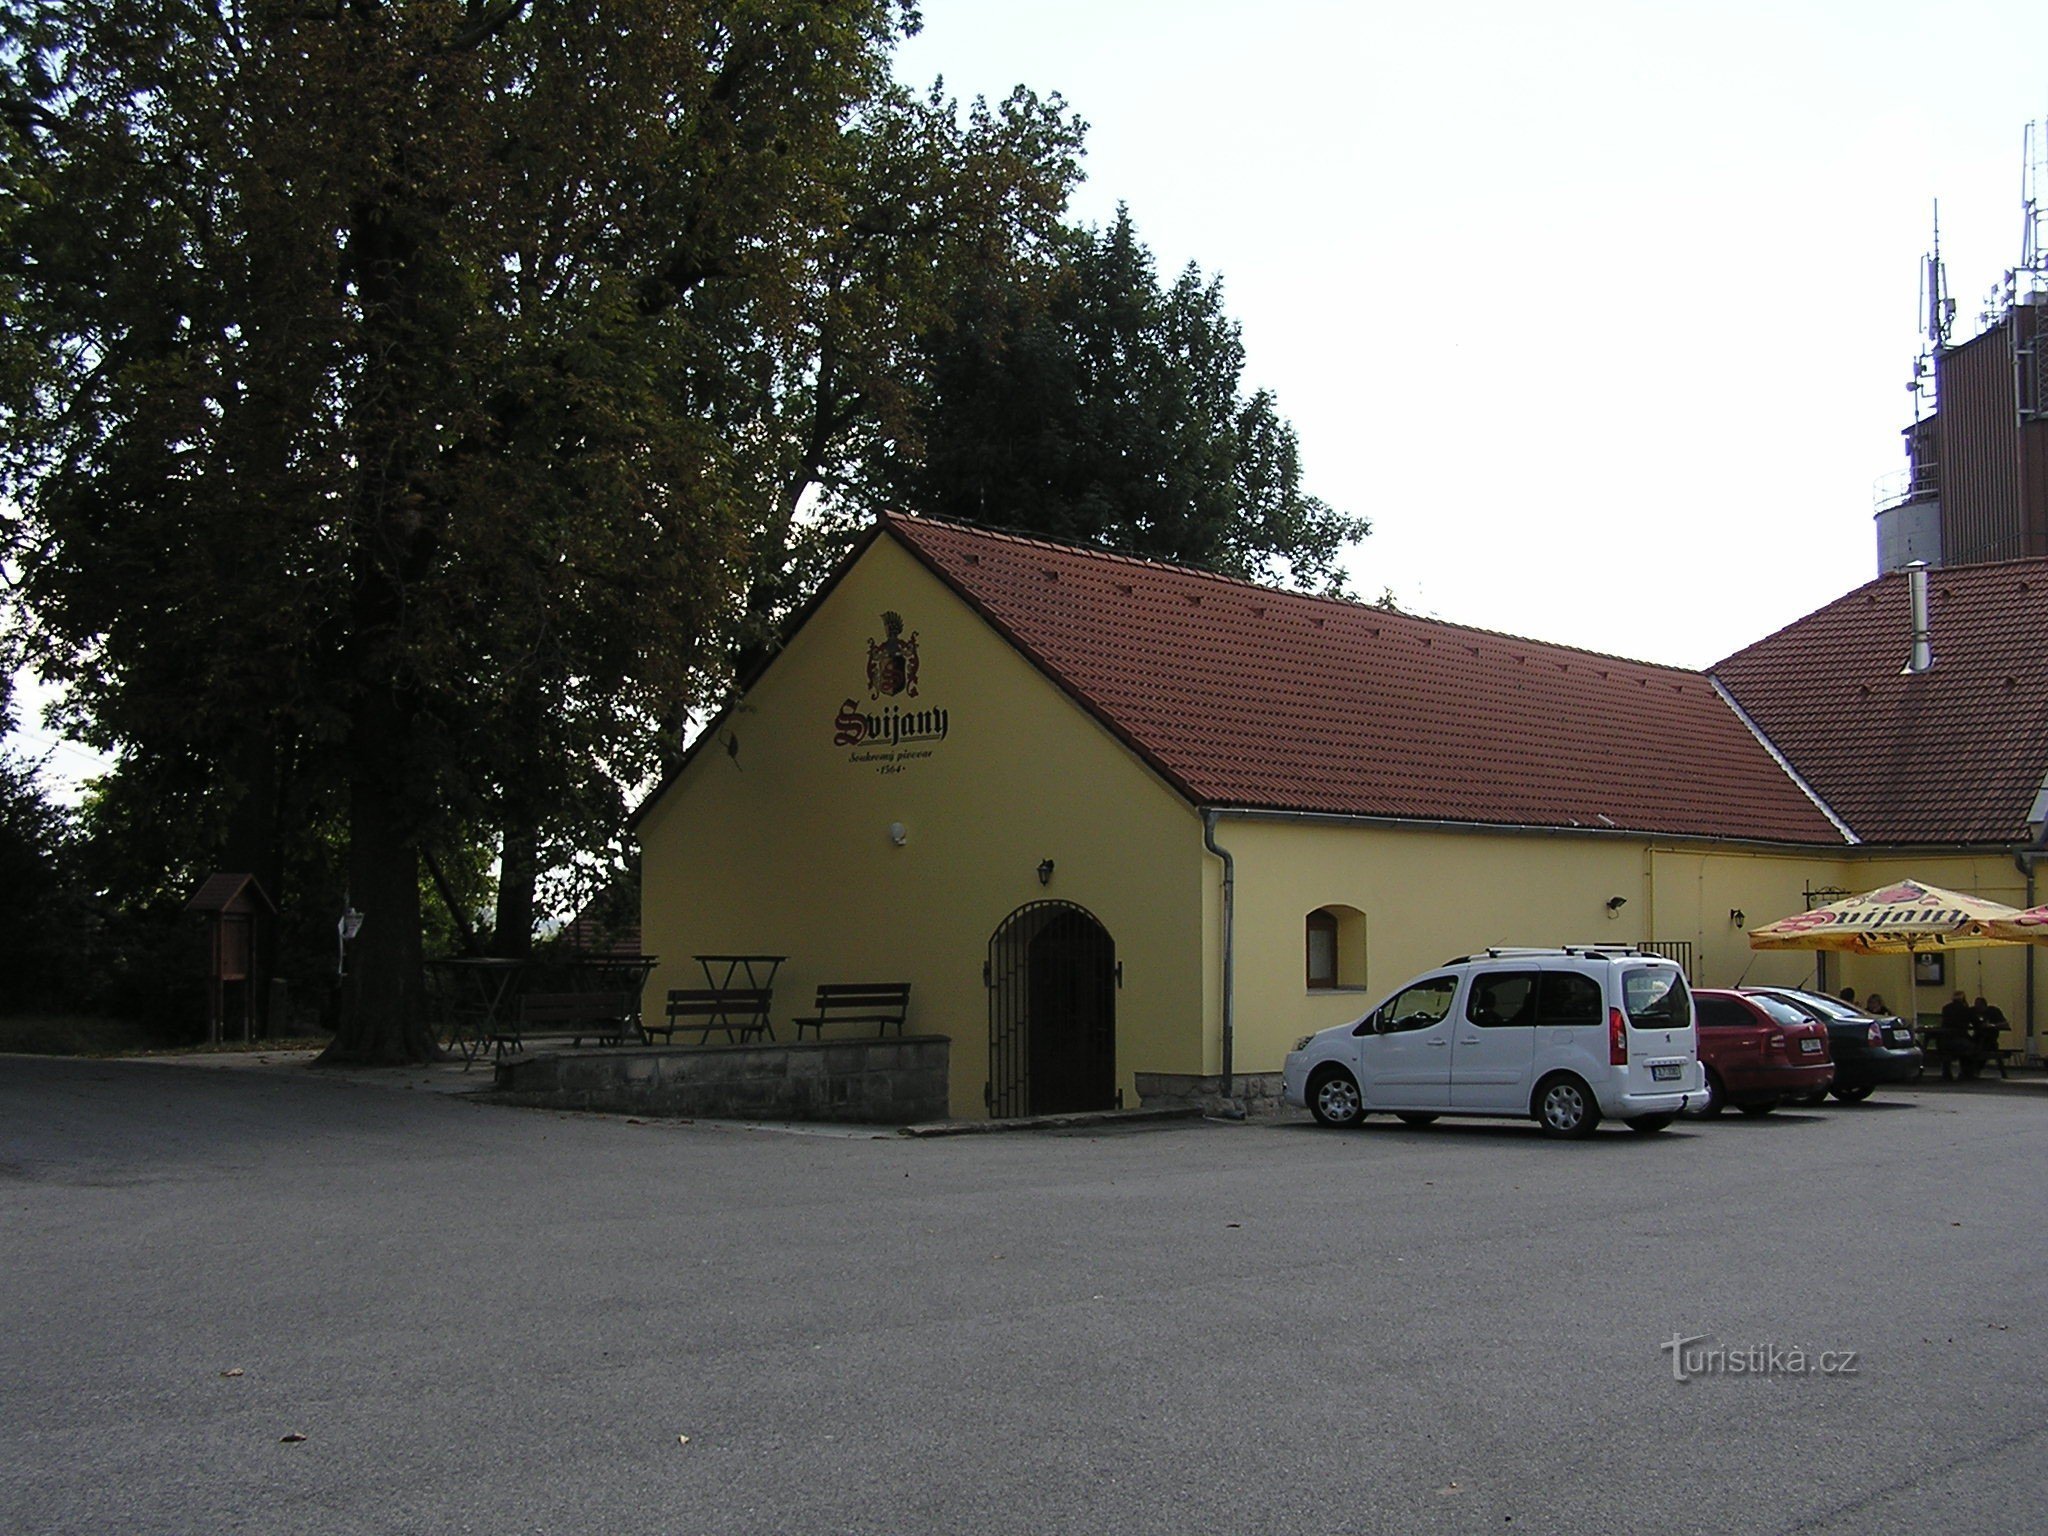 Nhà máy bia Svijany (8/2014)